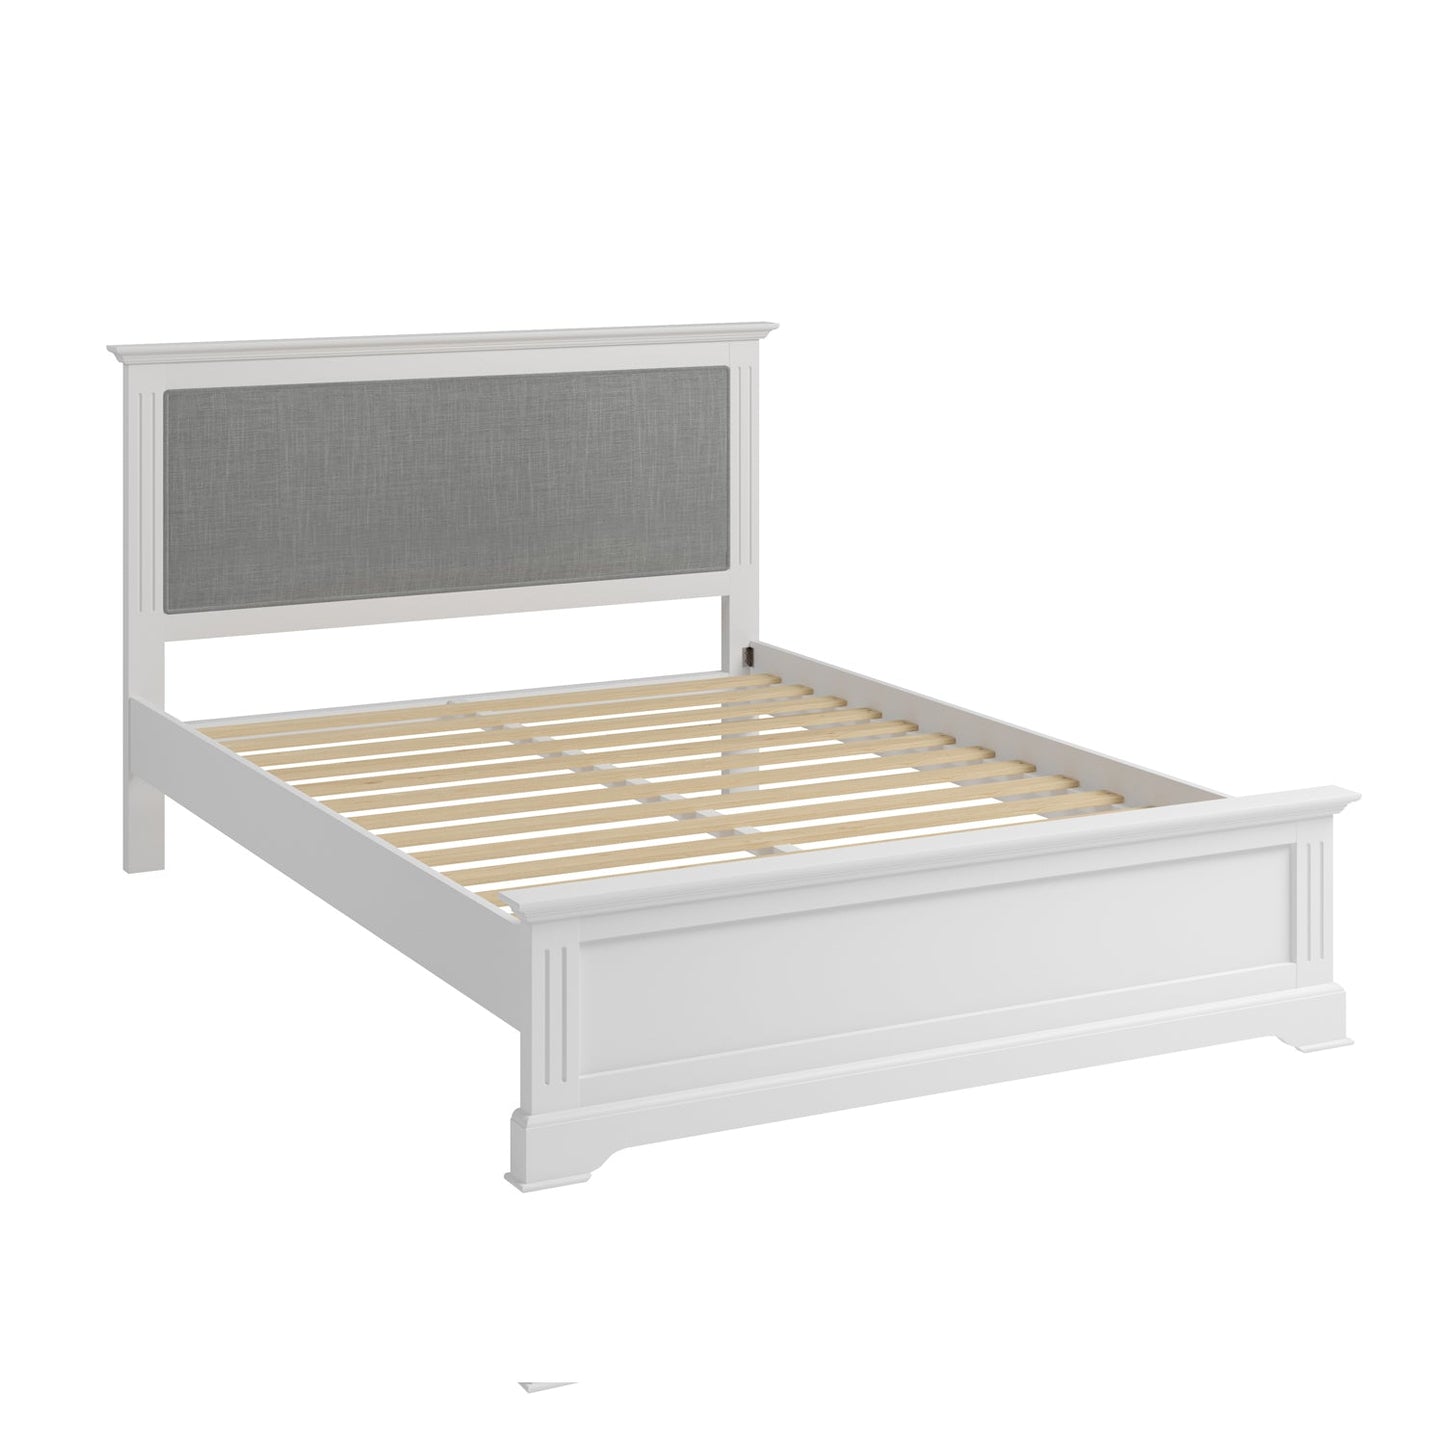 Billingford White Bed - 4ft6